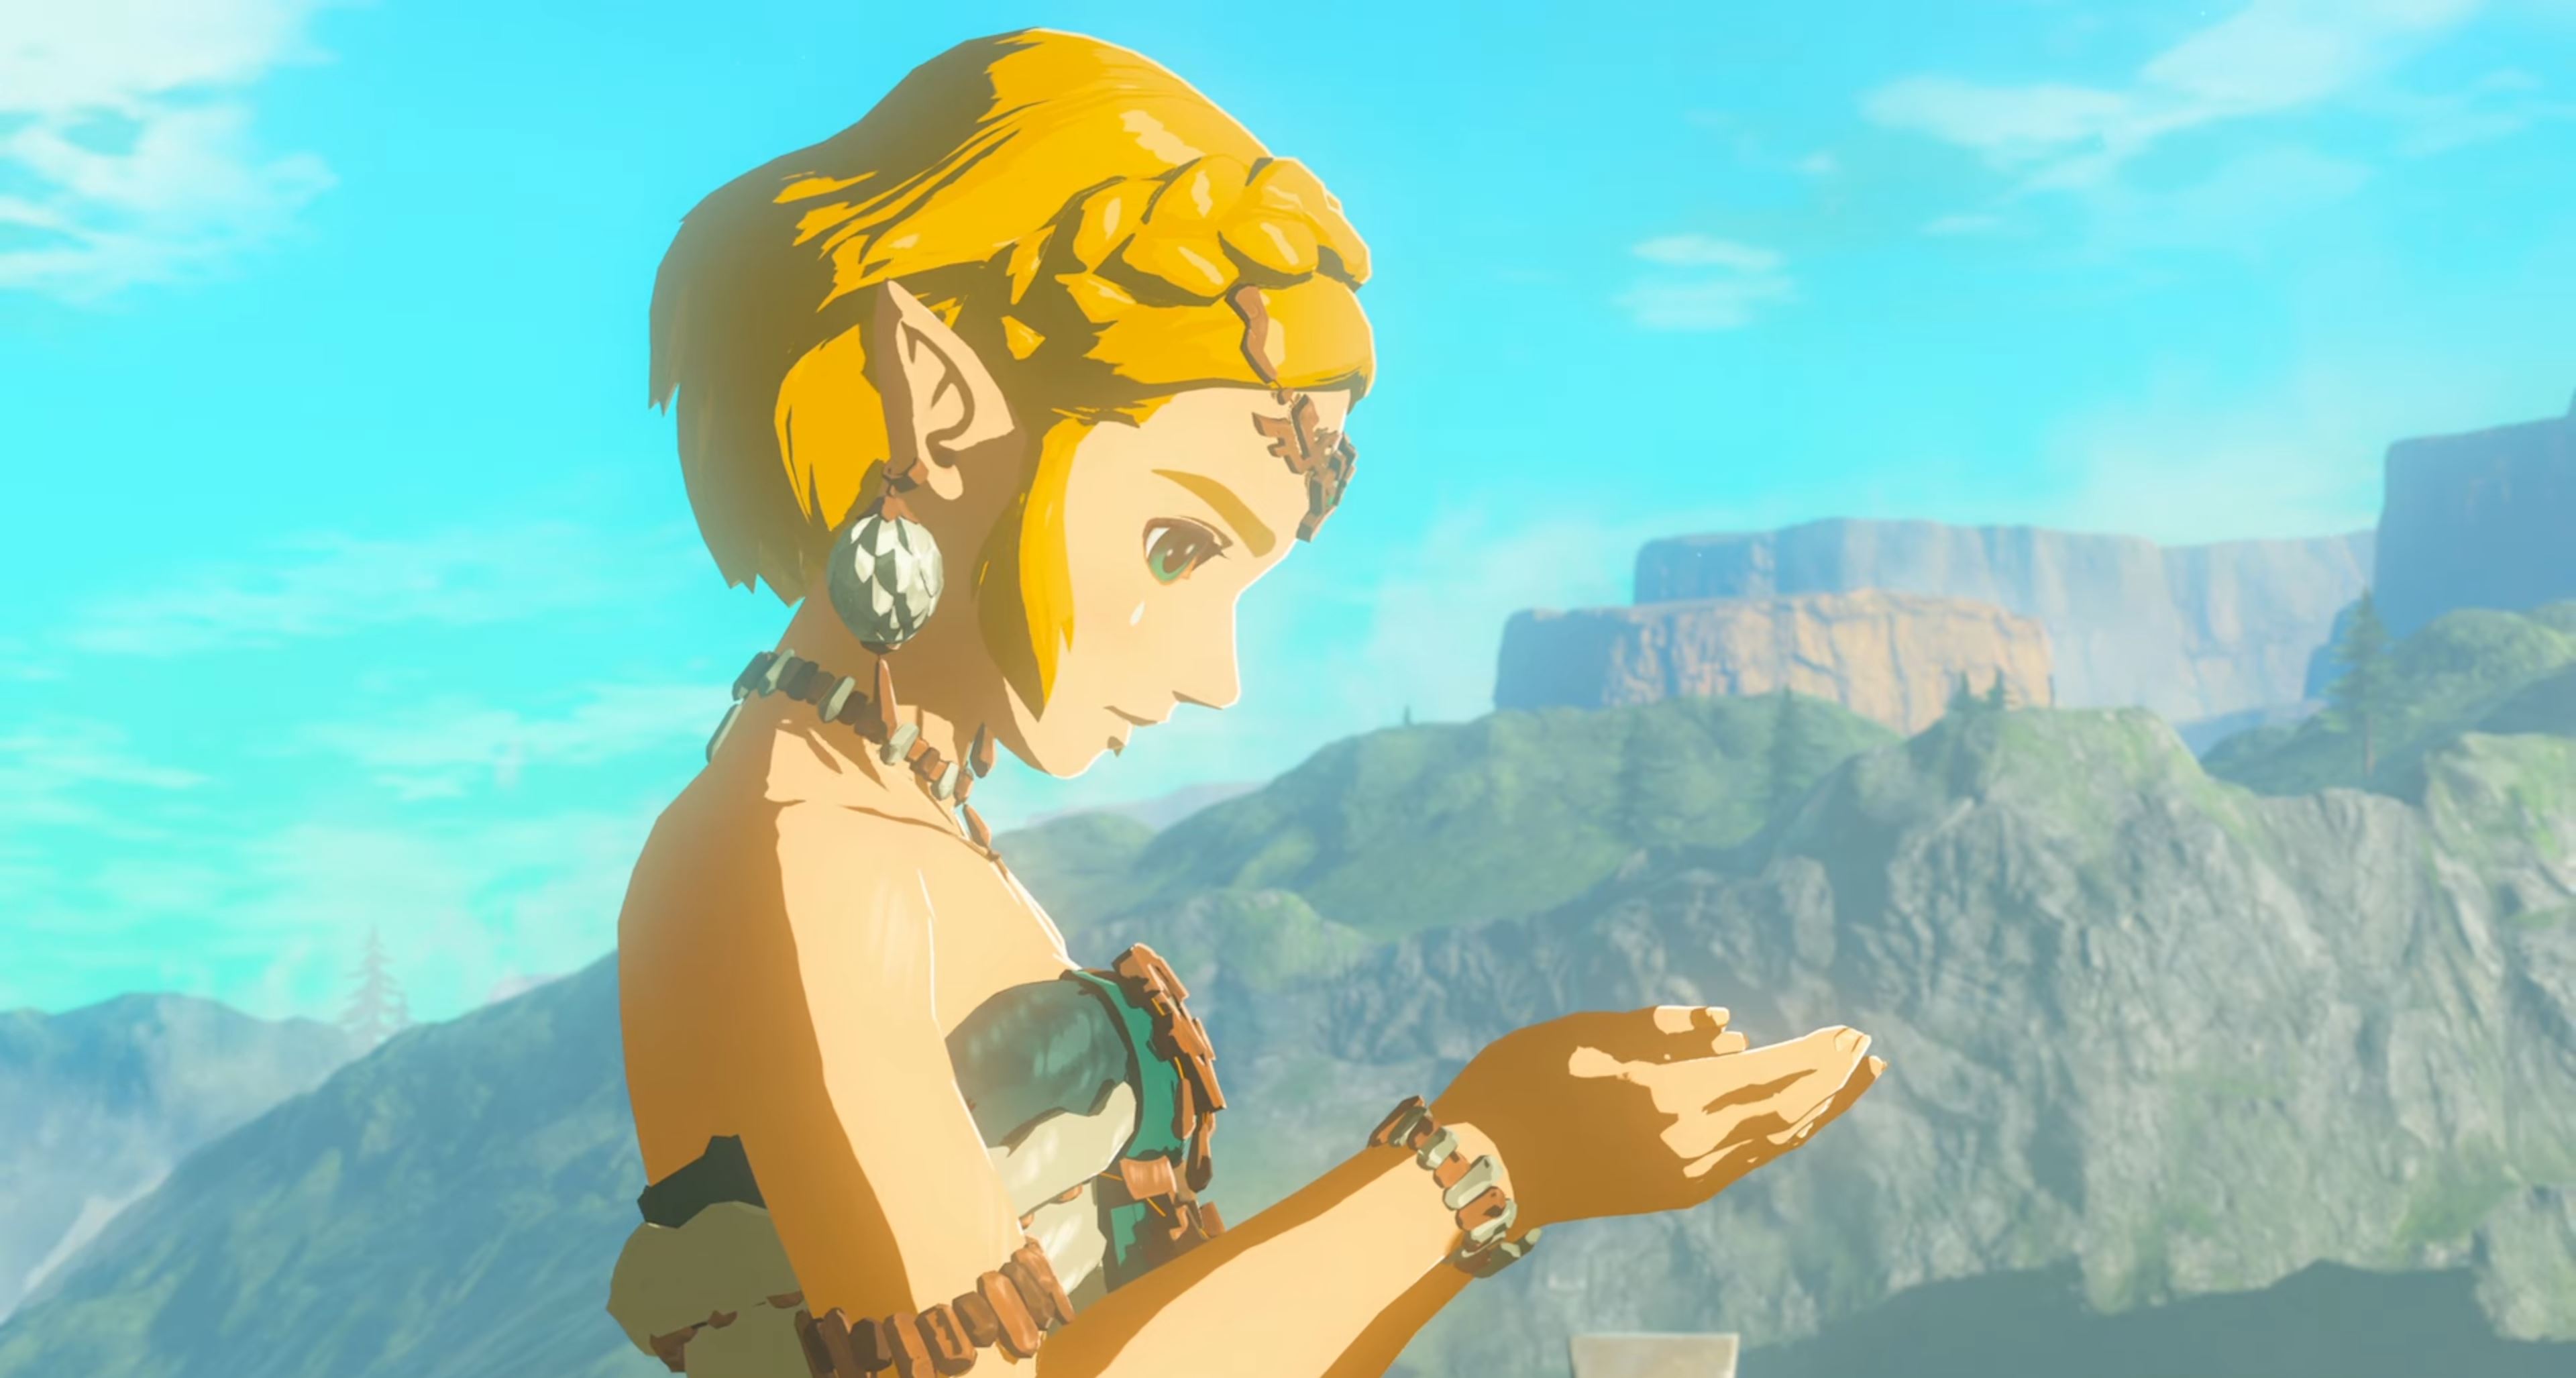 Zelda Tears of the Kingdom release date